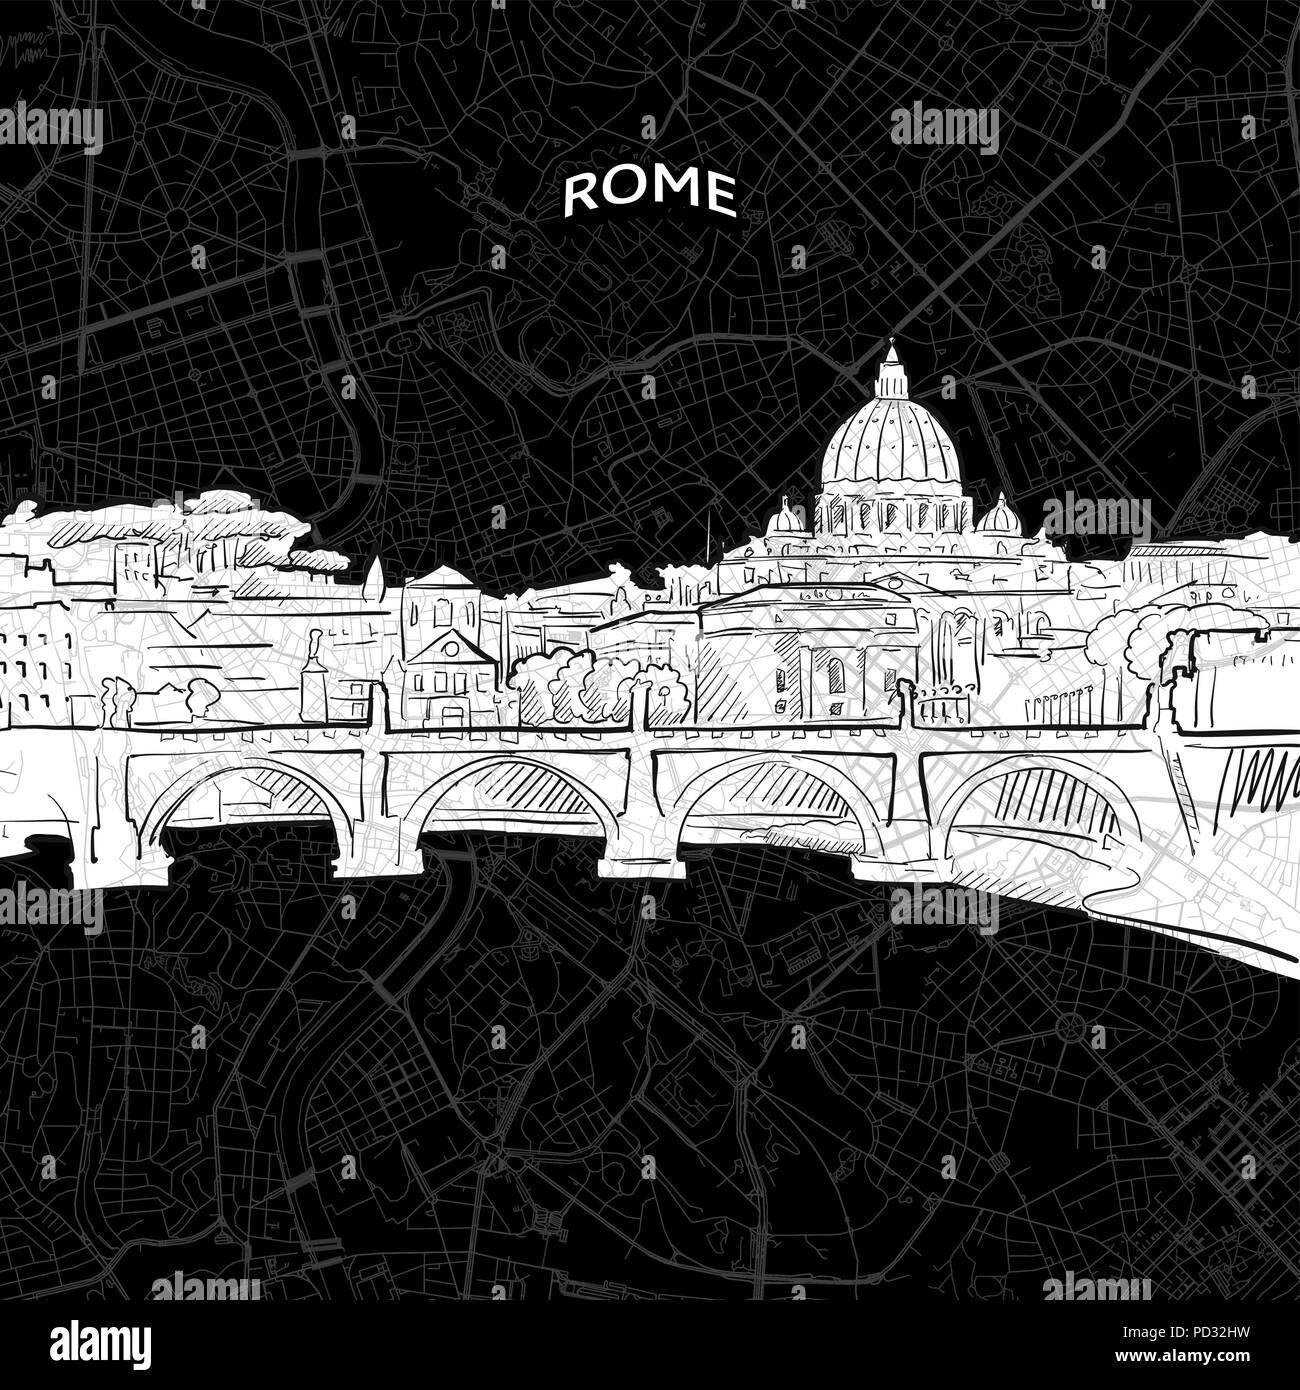 Vektor Zeichnung von Rom Skyline mit Karte. Italien Reise Sehenswürdigkeit. Schwarze und weiße Abdeckung und Hintergrund Konzept. Stock Vektor